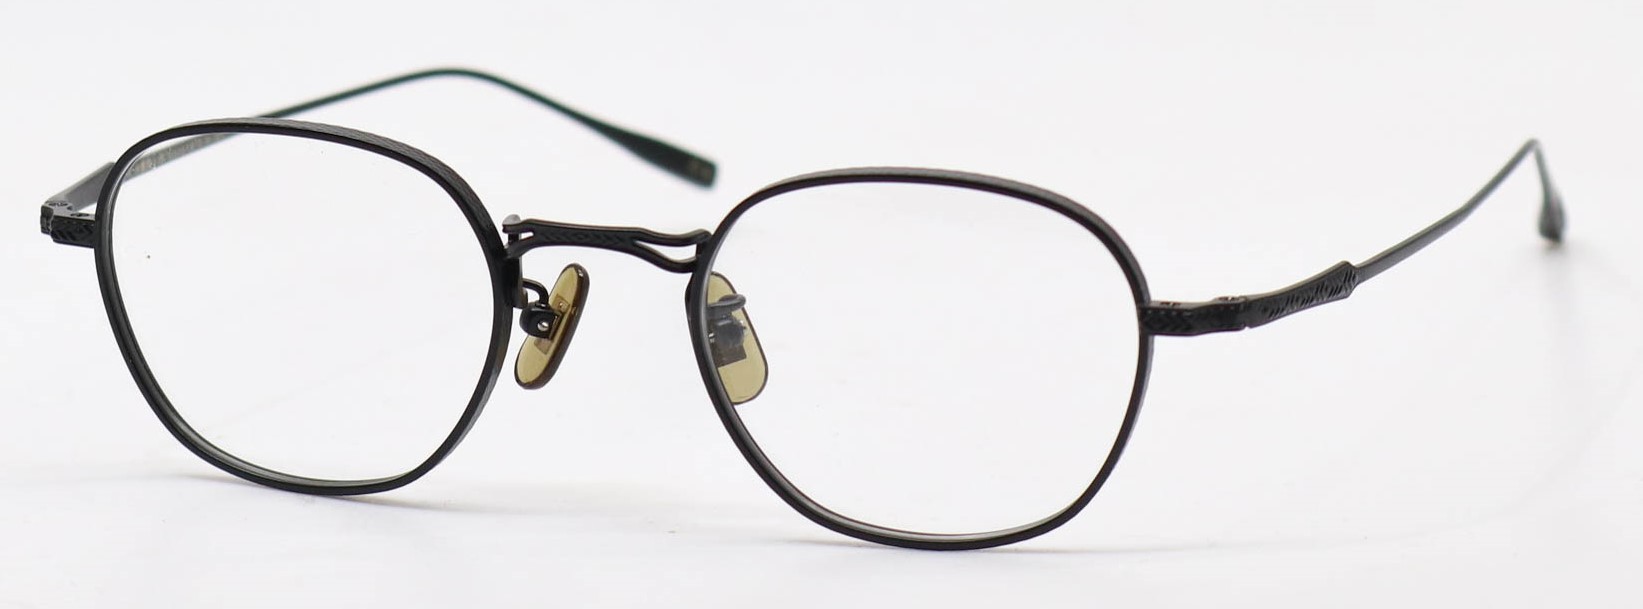 眼鏡のカラータイプC-4 Black-Matt